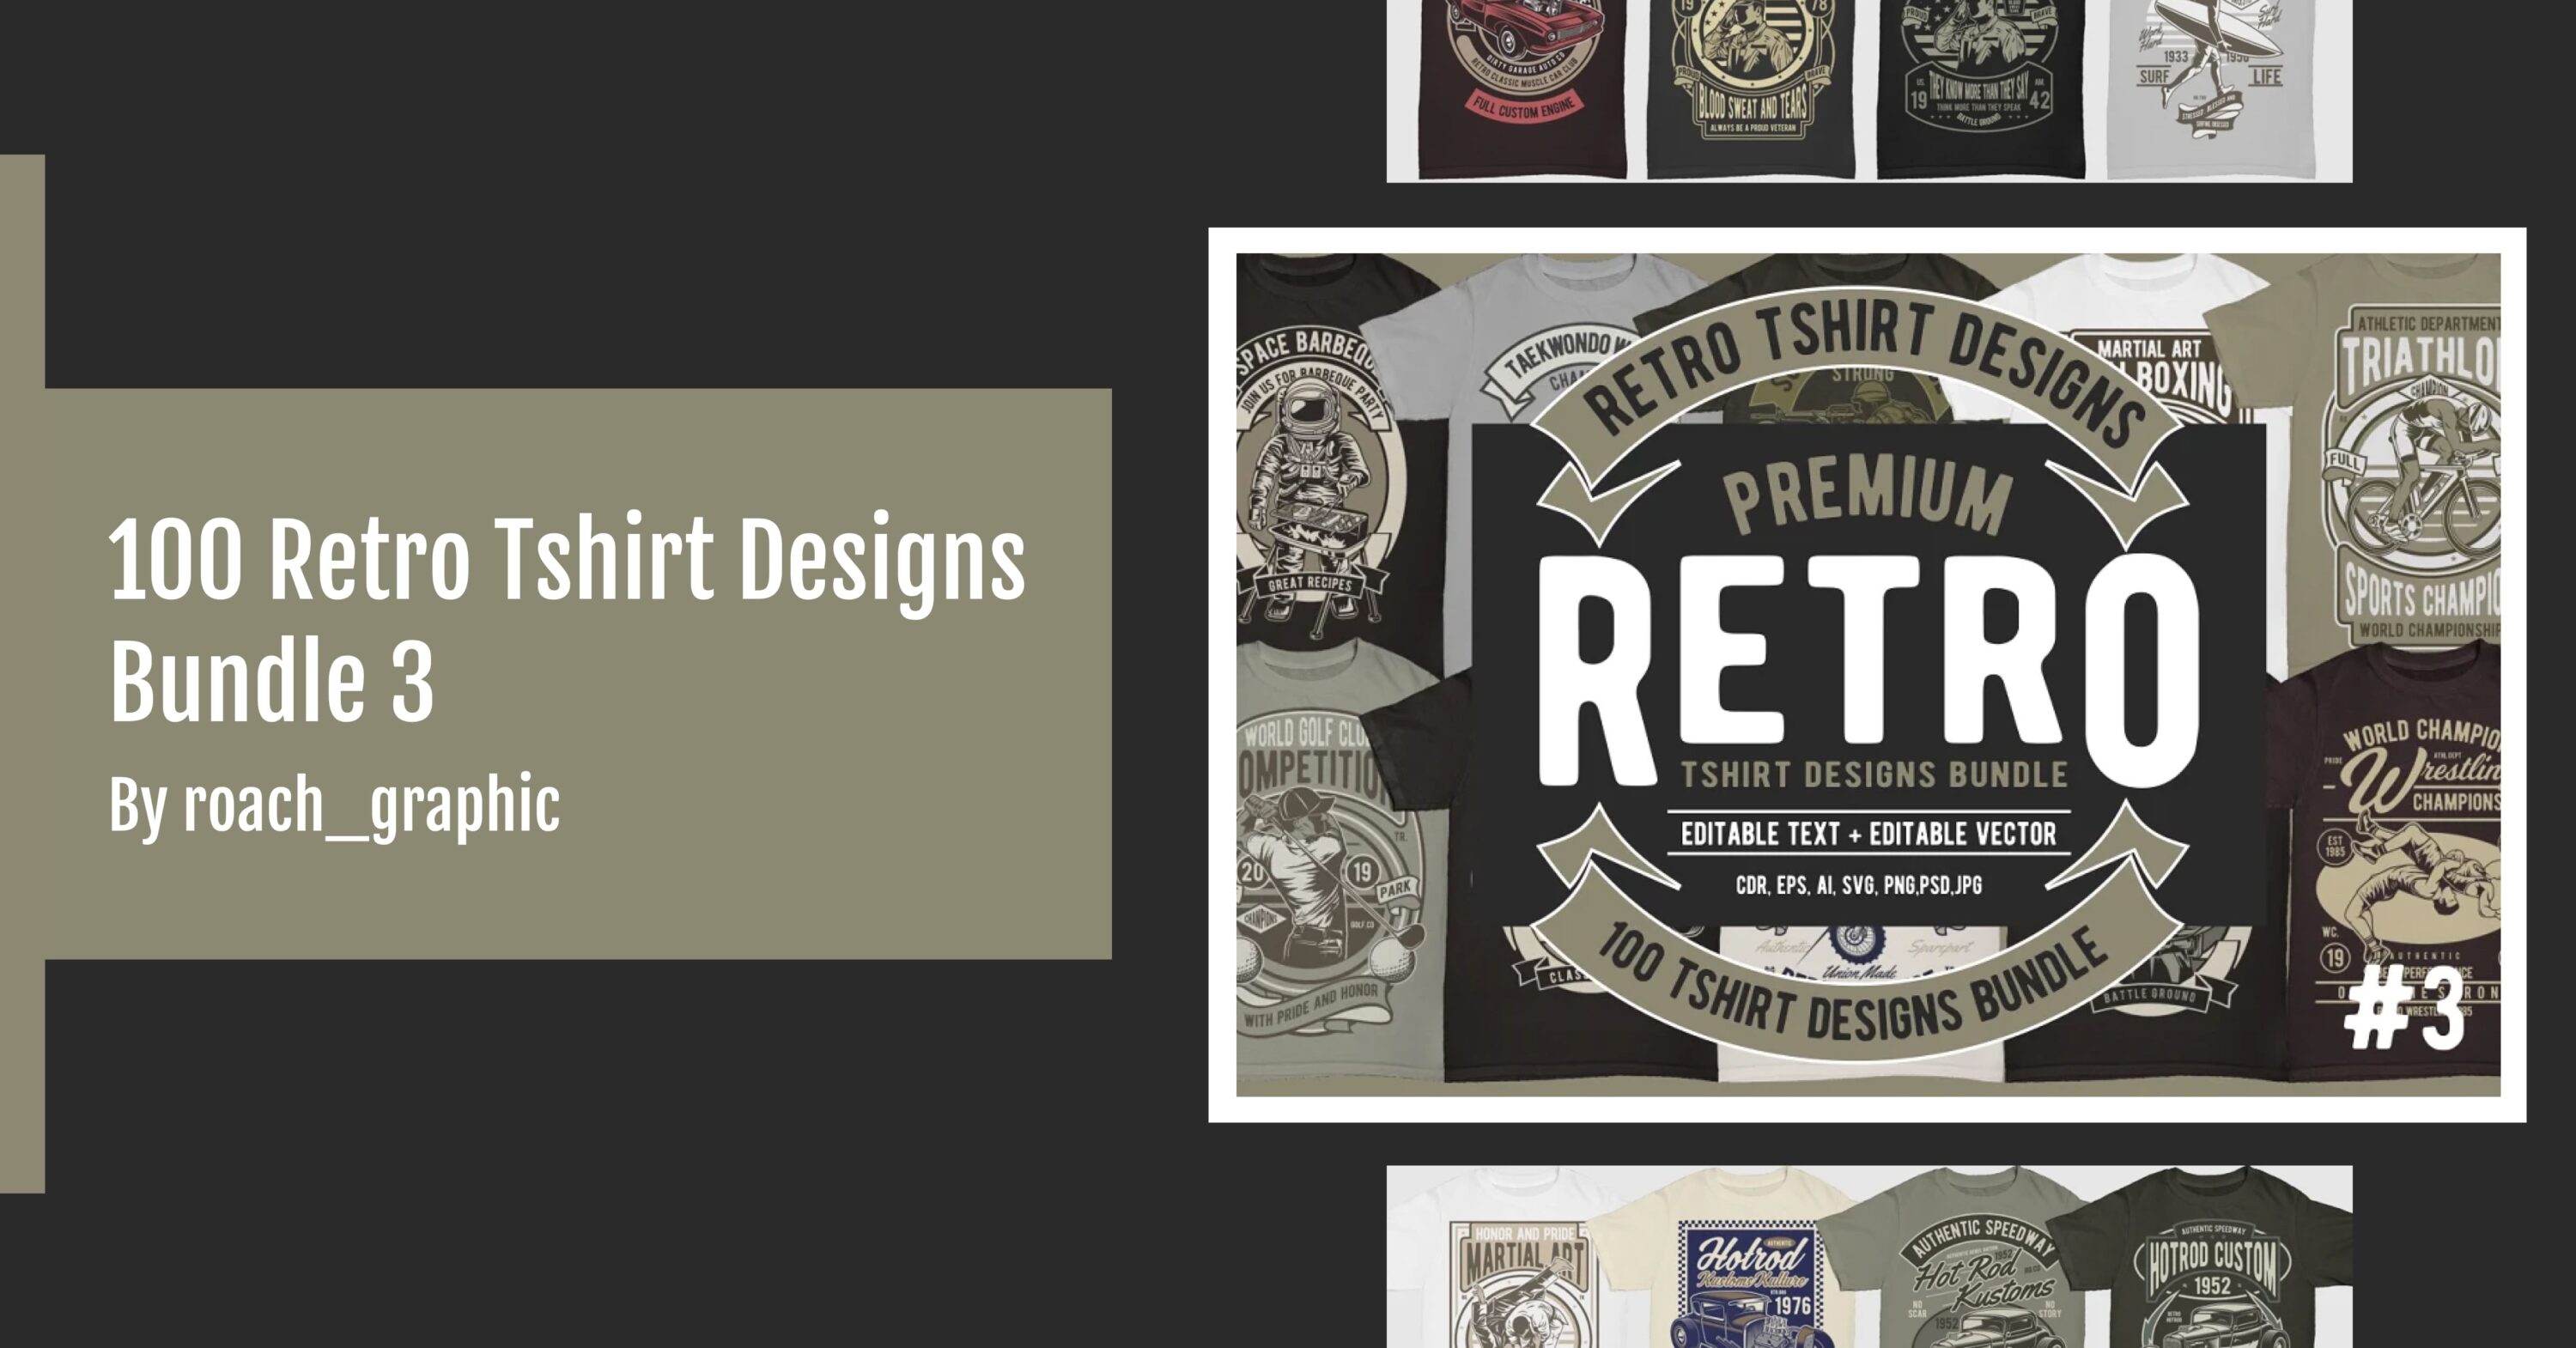 100 Retro Tshirt Designs Bundle 3 facebook image.